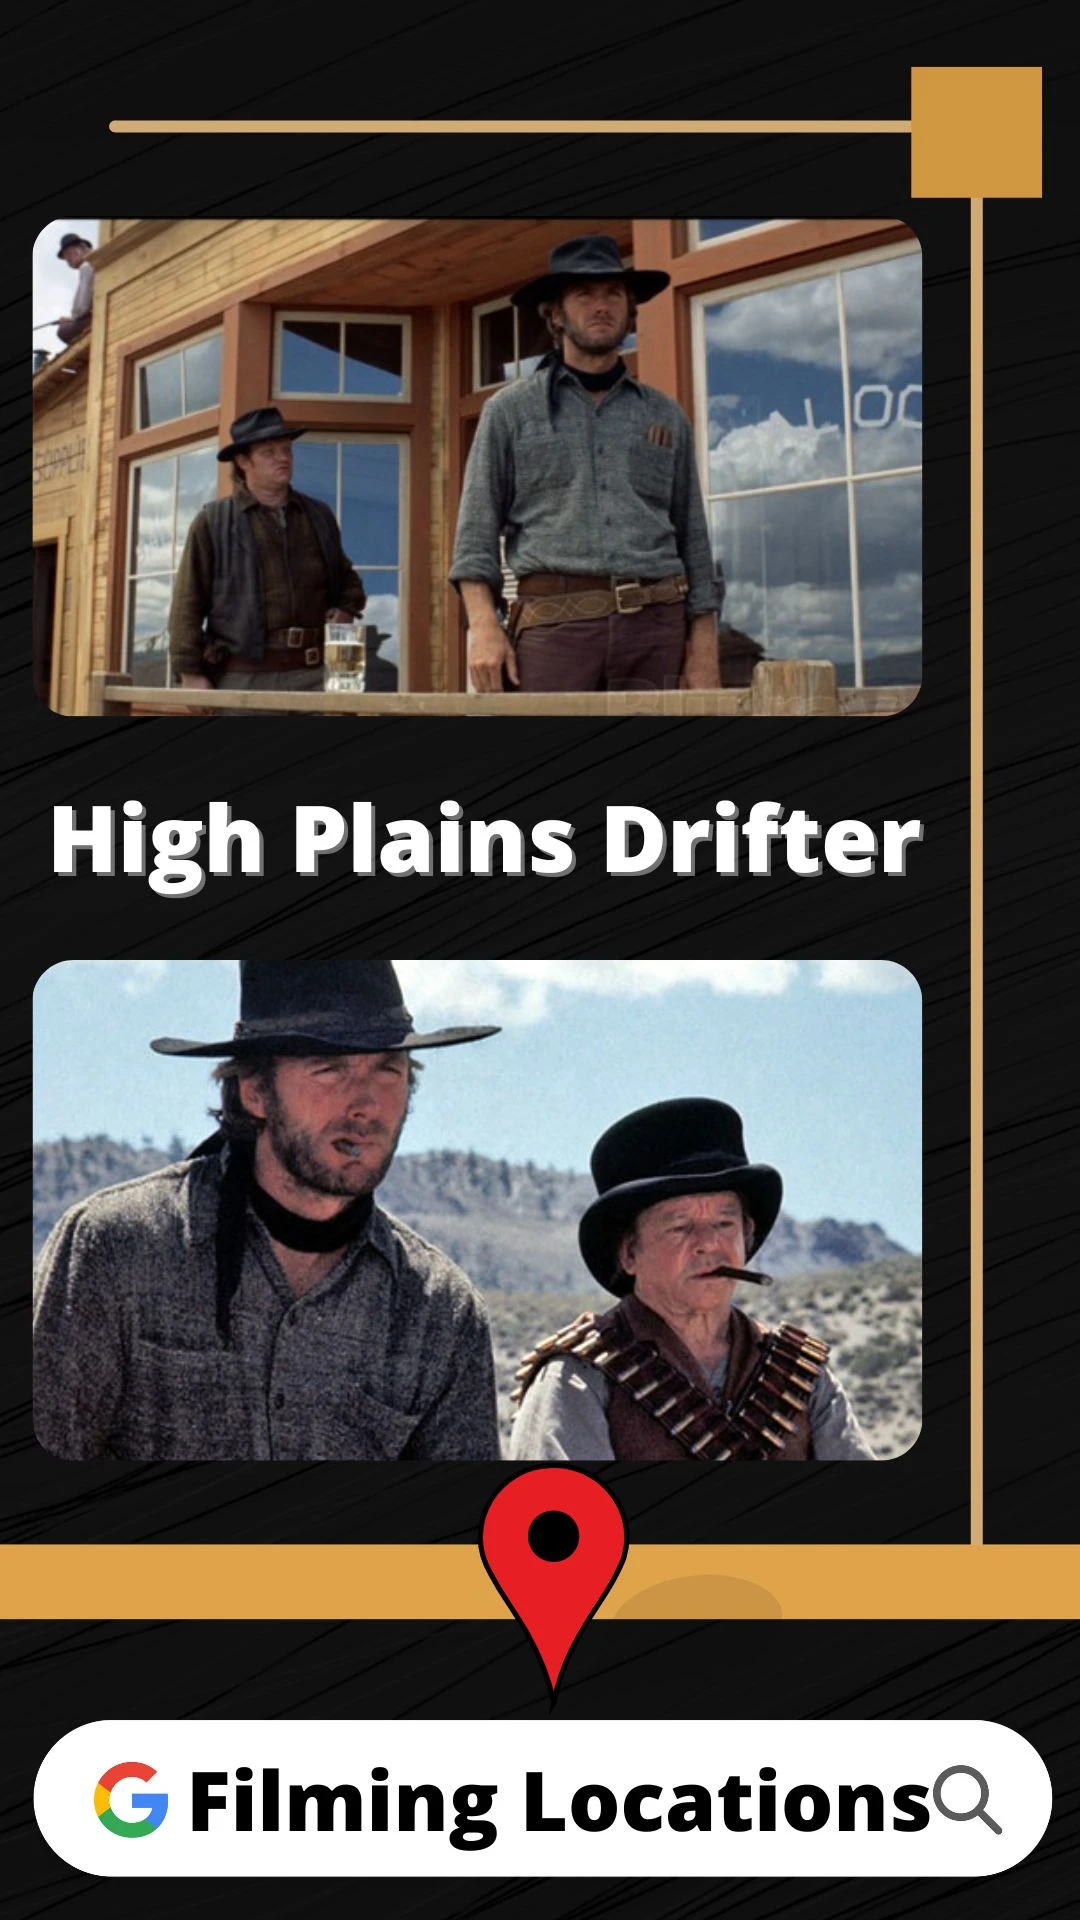 High Plains Drifter Filming Locations